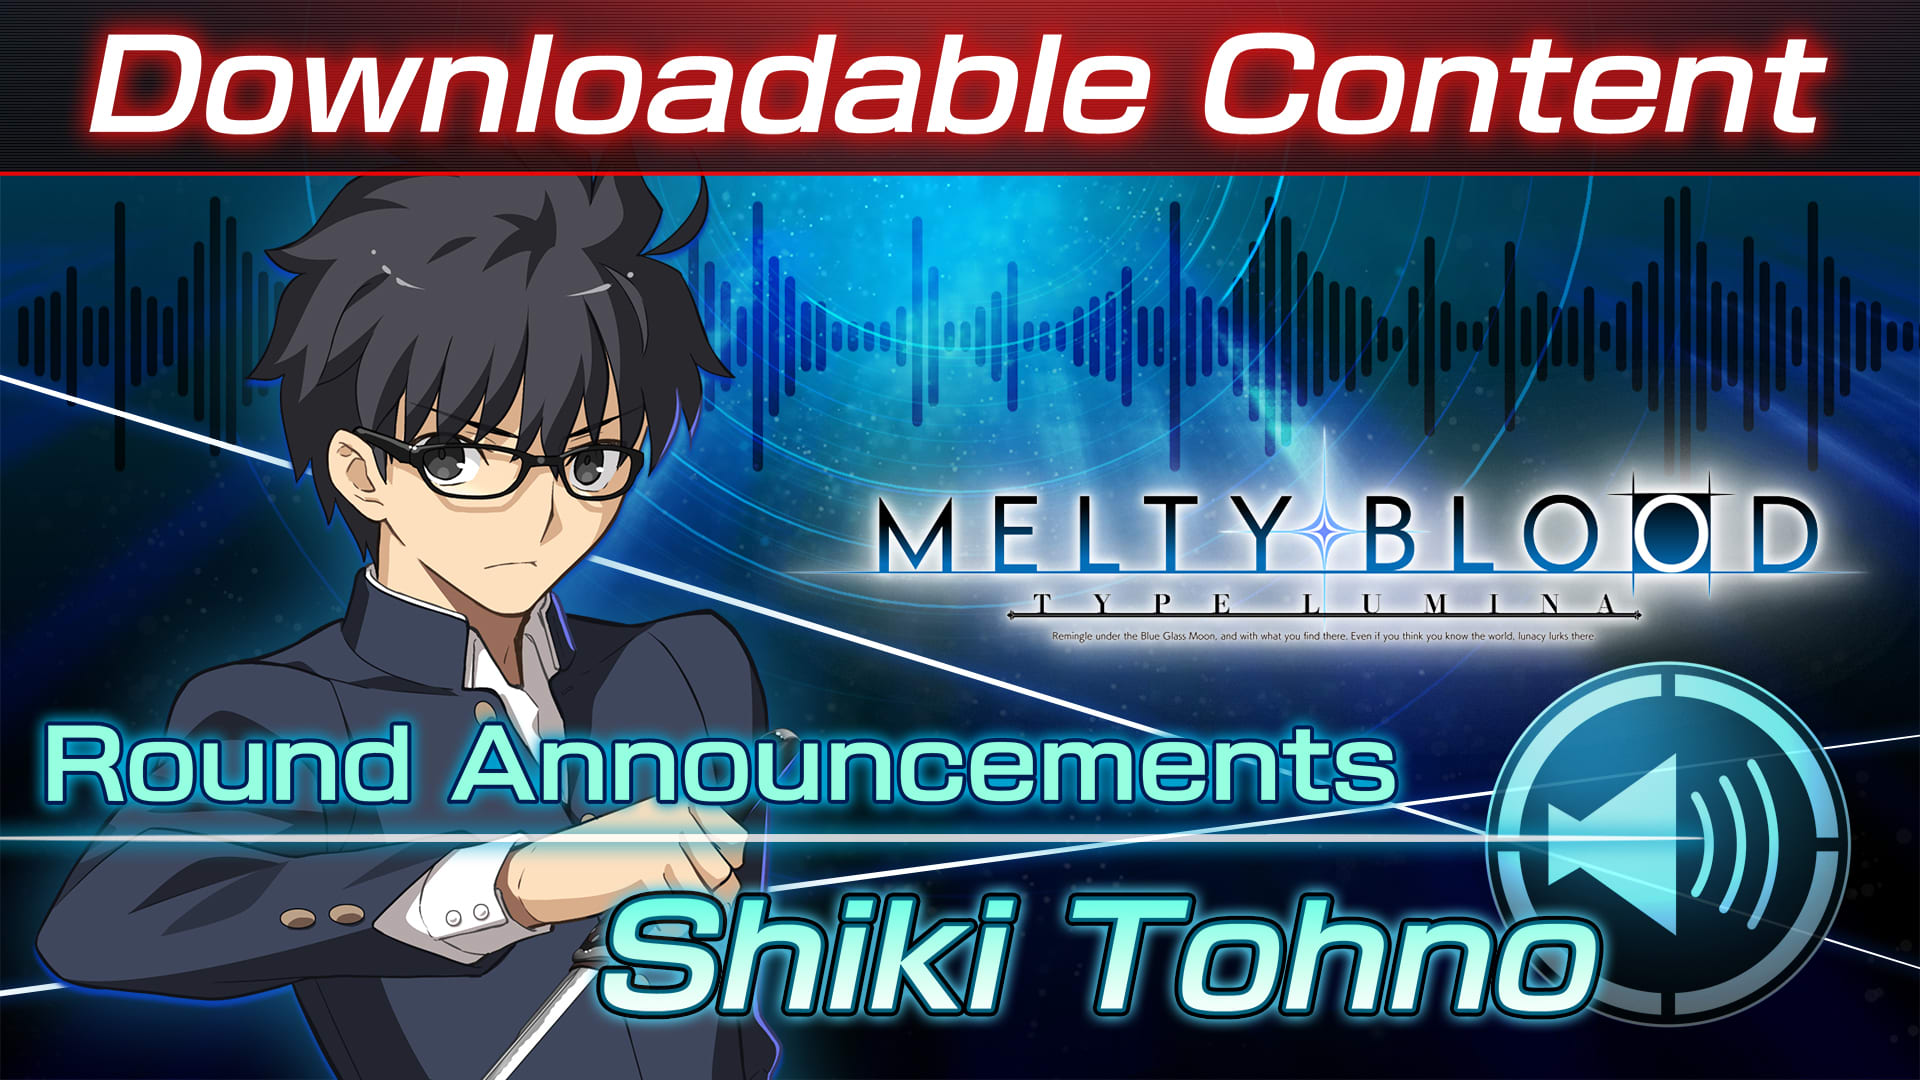 DLC : Shiki Tohno Round Announcements